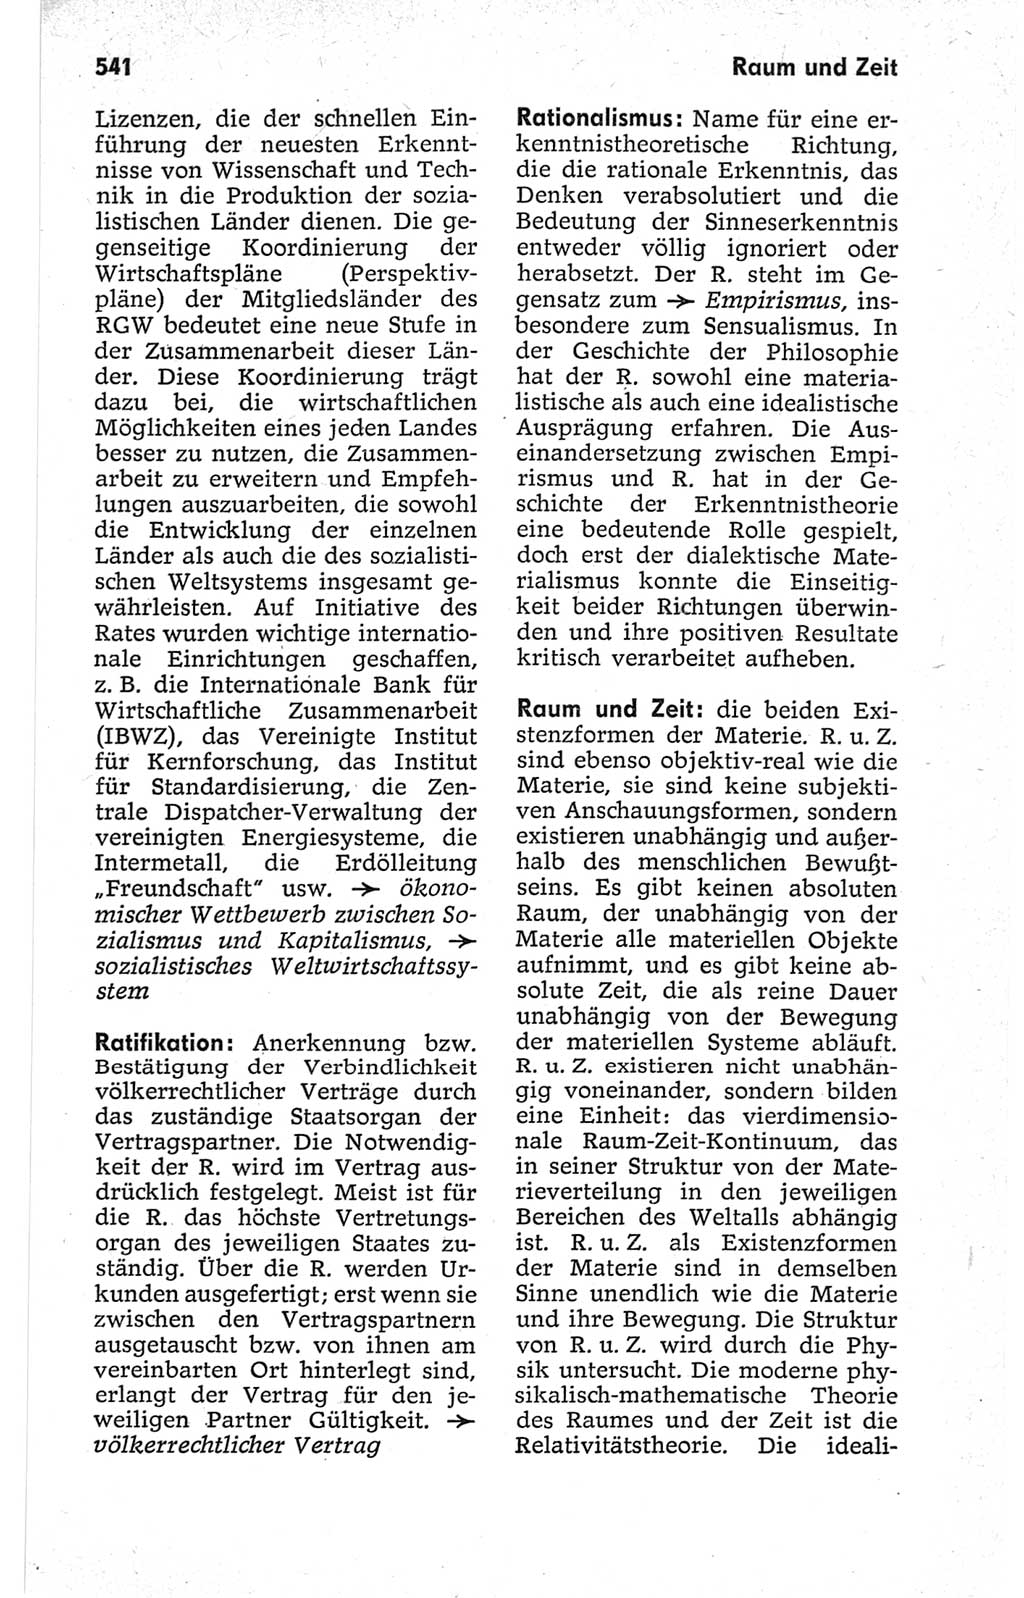 Kleines politisches Wörterbuch [Deutsche Demokratische Republik (DDR)] 1967, Seite 541 (Kl. pol. Wb. DDR 1967, S. 541)